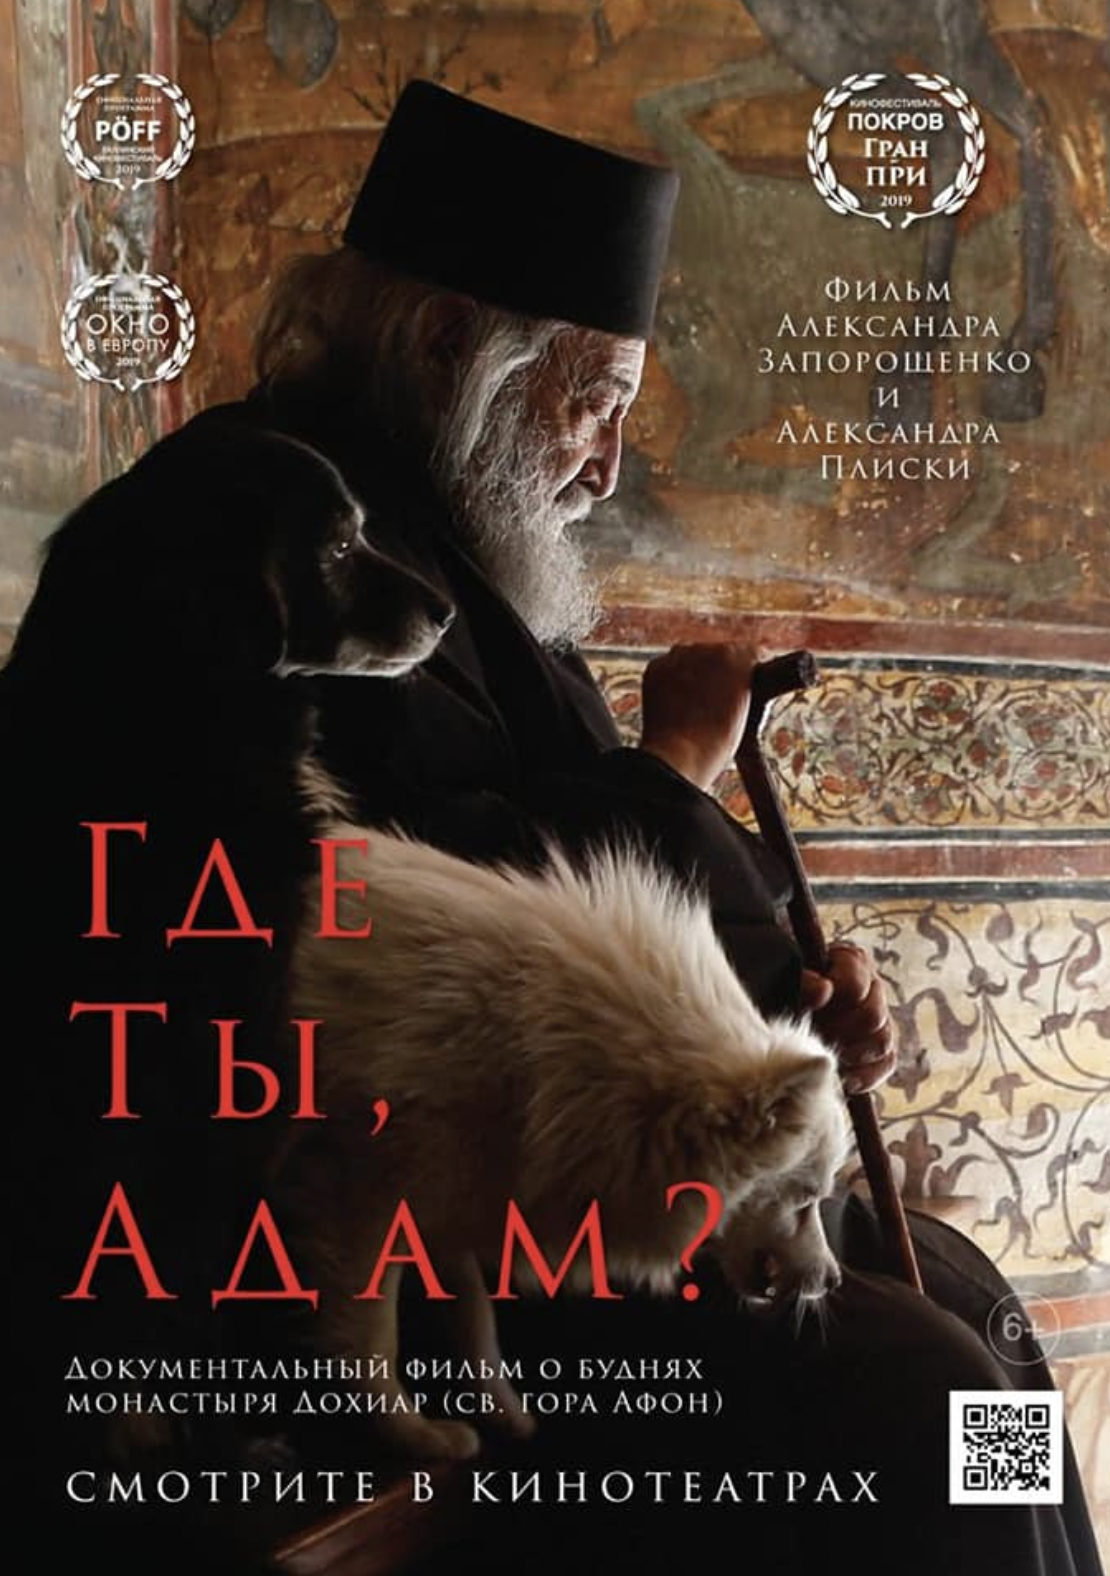 Ουκρανική ταινία για το Άγιο Όρος στην Ελλάδα